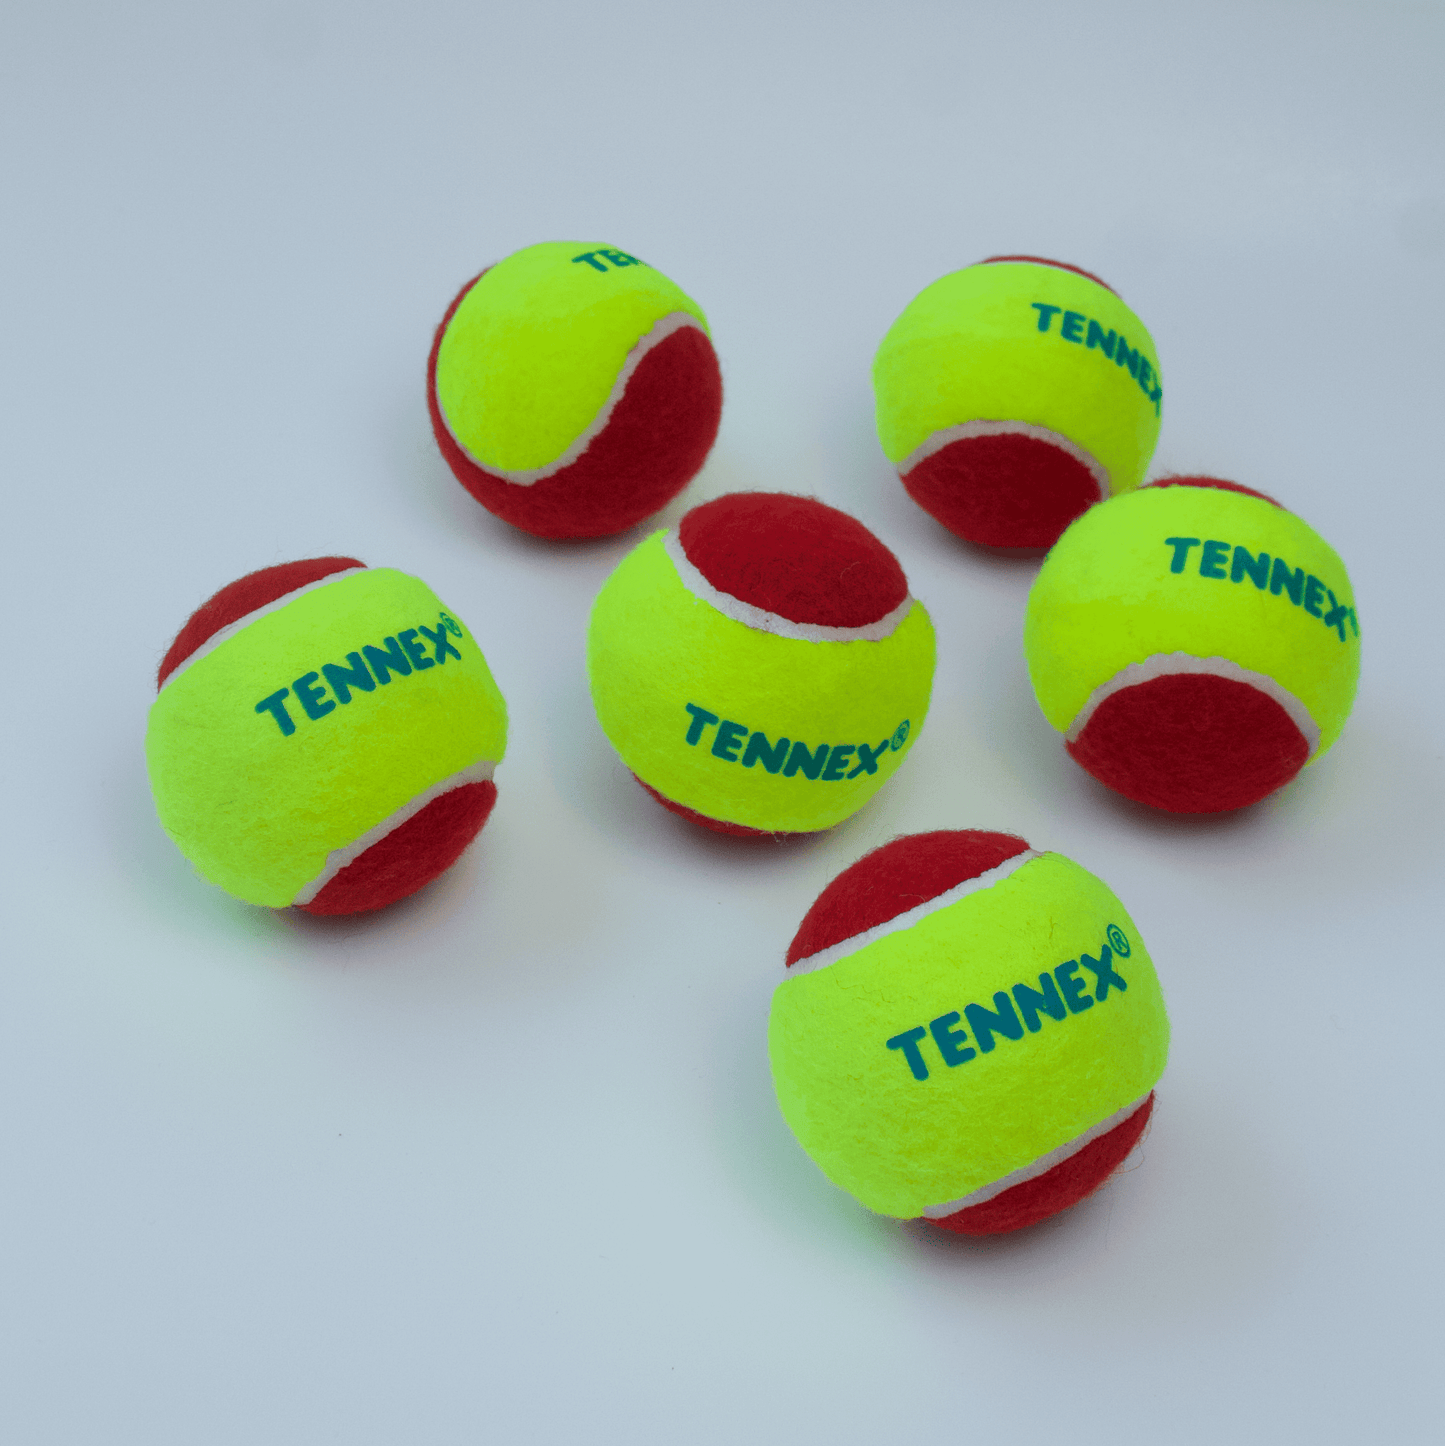 Cricket Tennis Ball Soft/Light Weight (Pack of 6) - Underarm Bowling